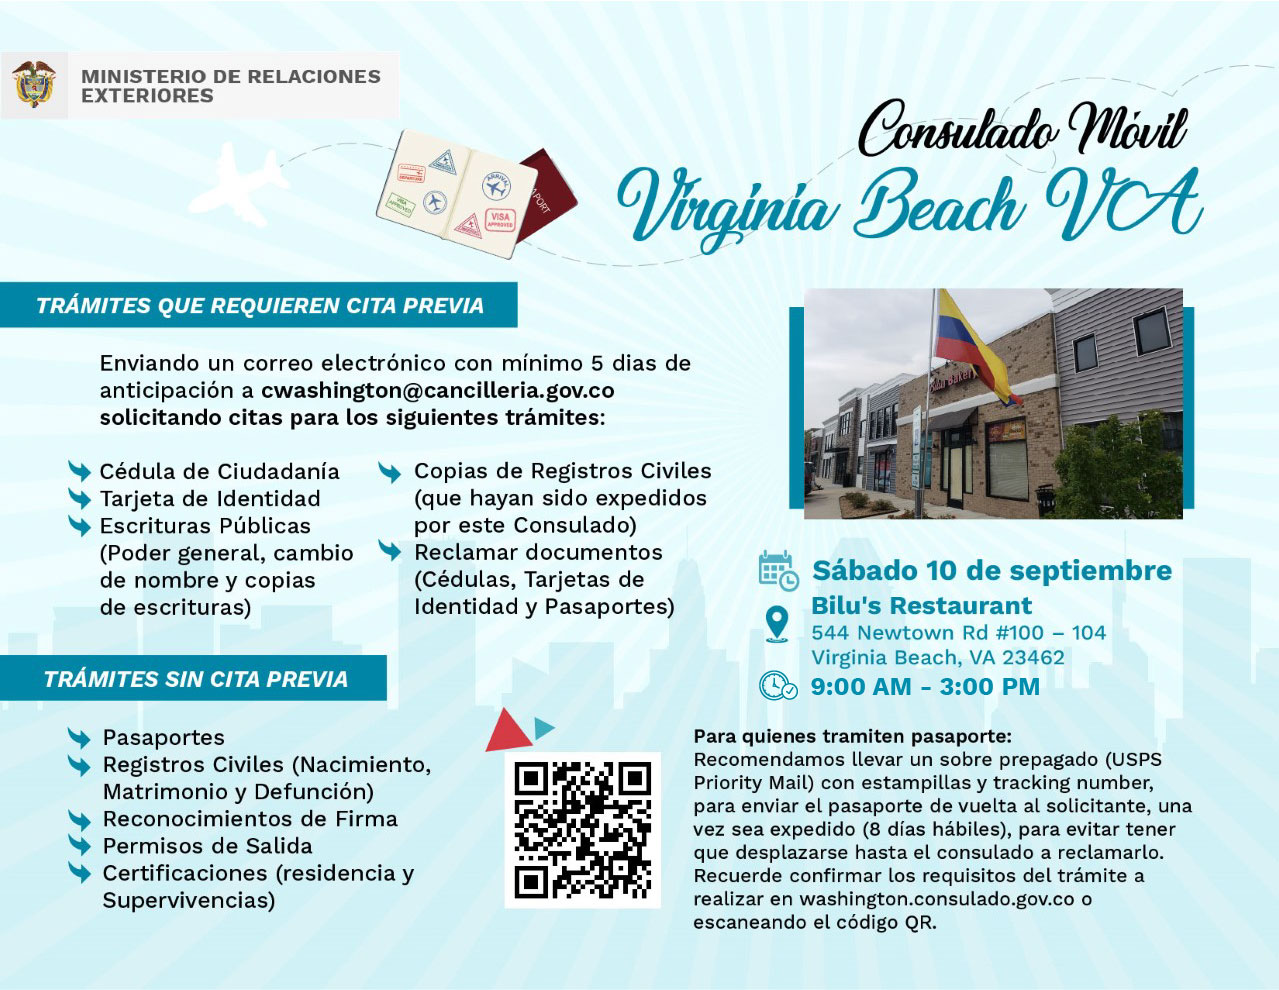 Consulado Móvil en Virginia Beach el 10 de septiembre de 2022